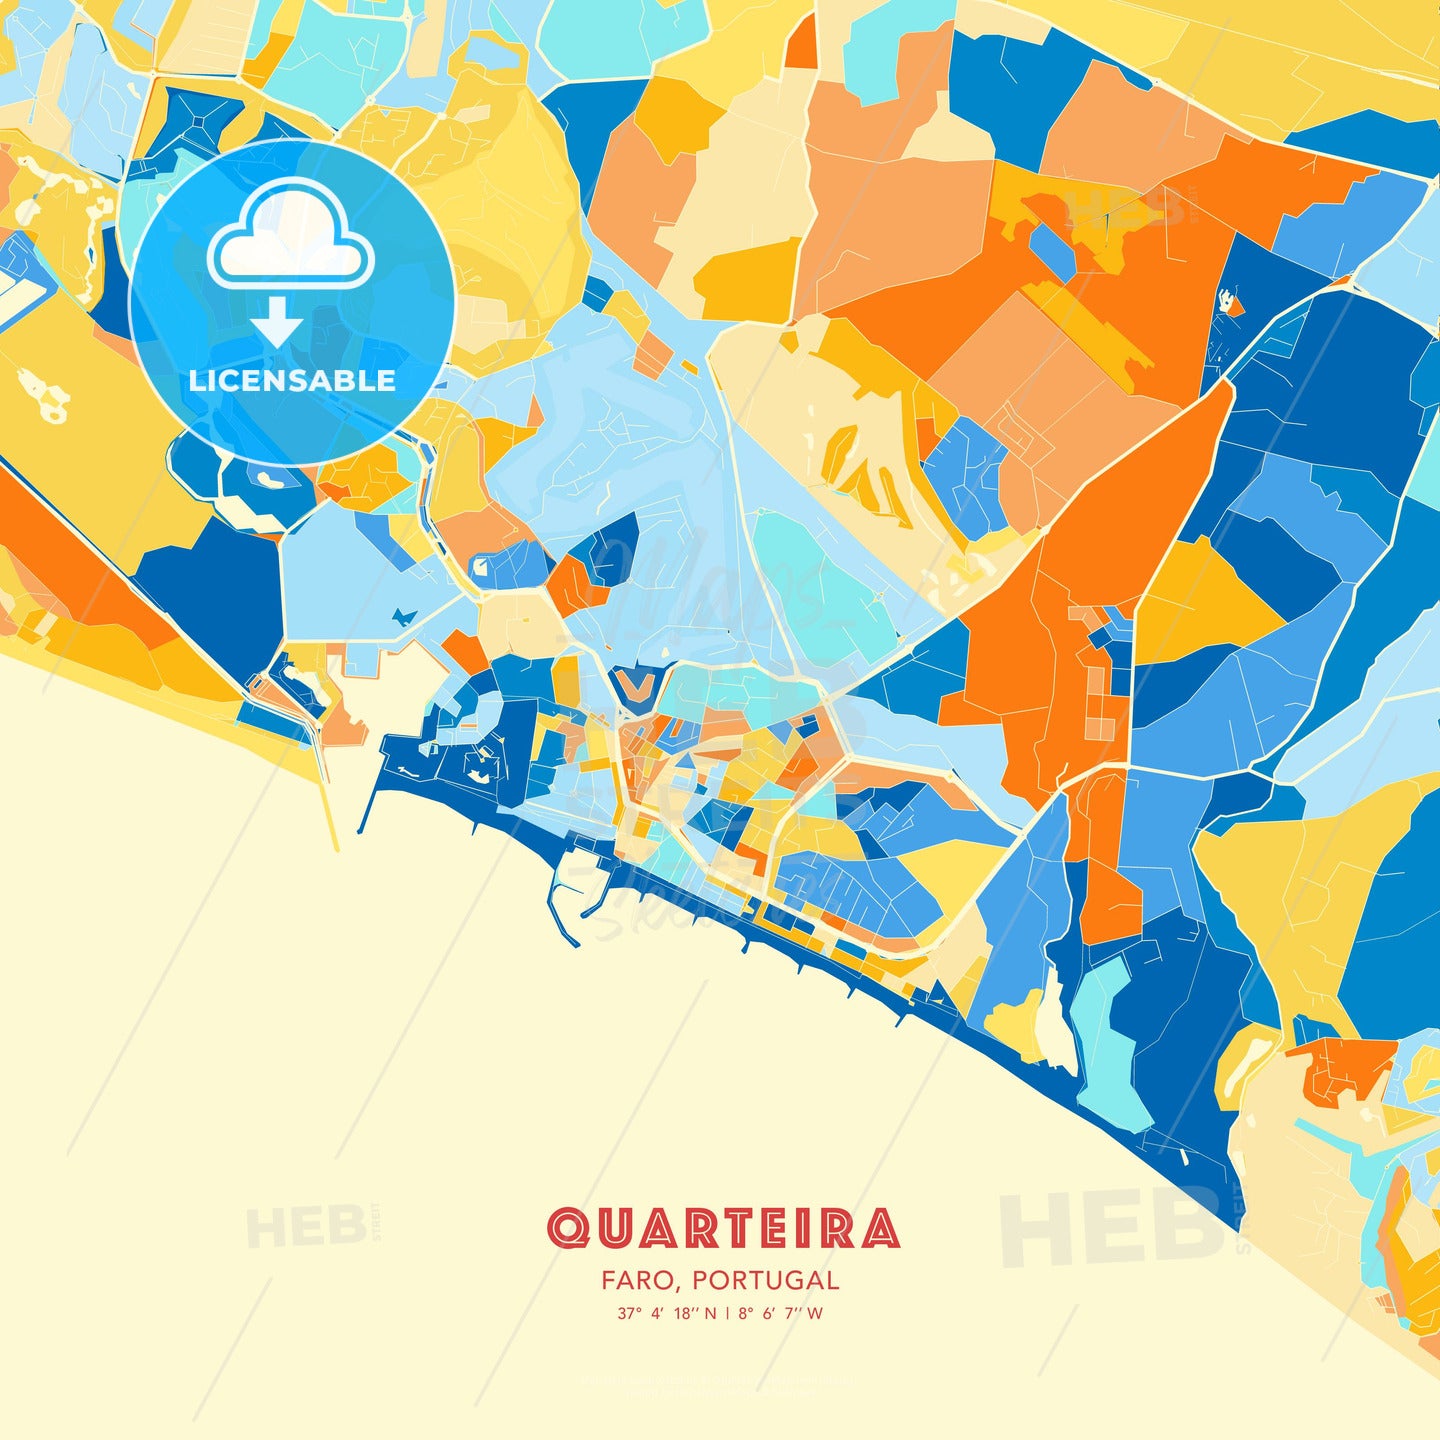 Quarteira, Faro, Portugal, map - HEBSTREITS Sketches